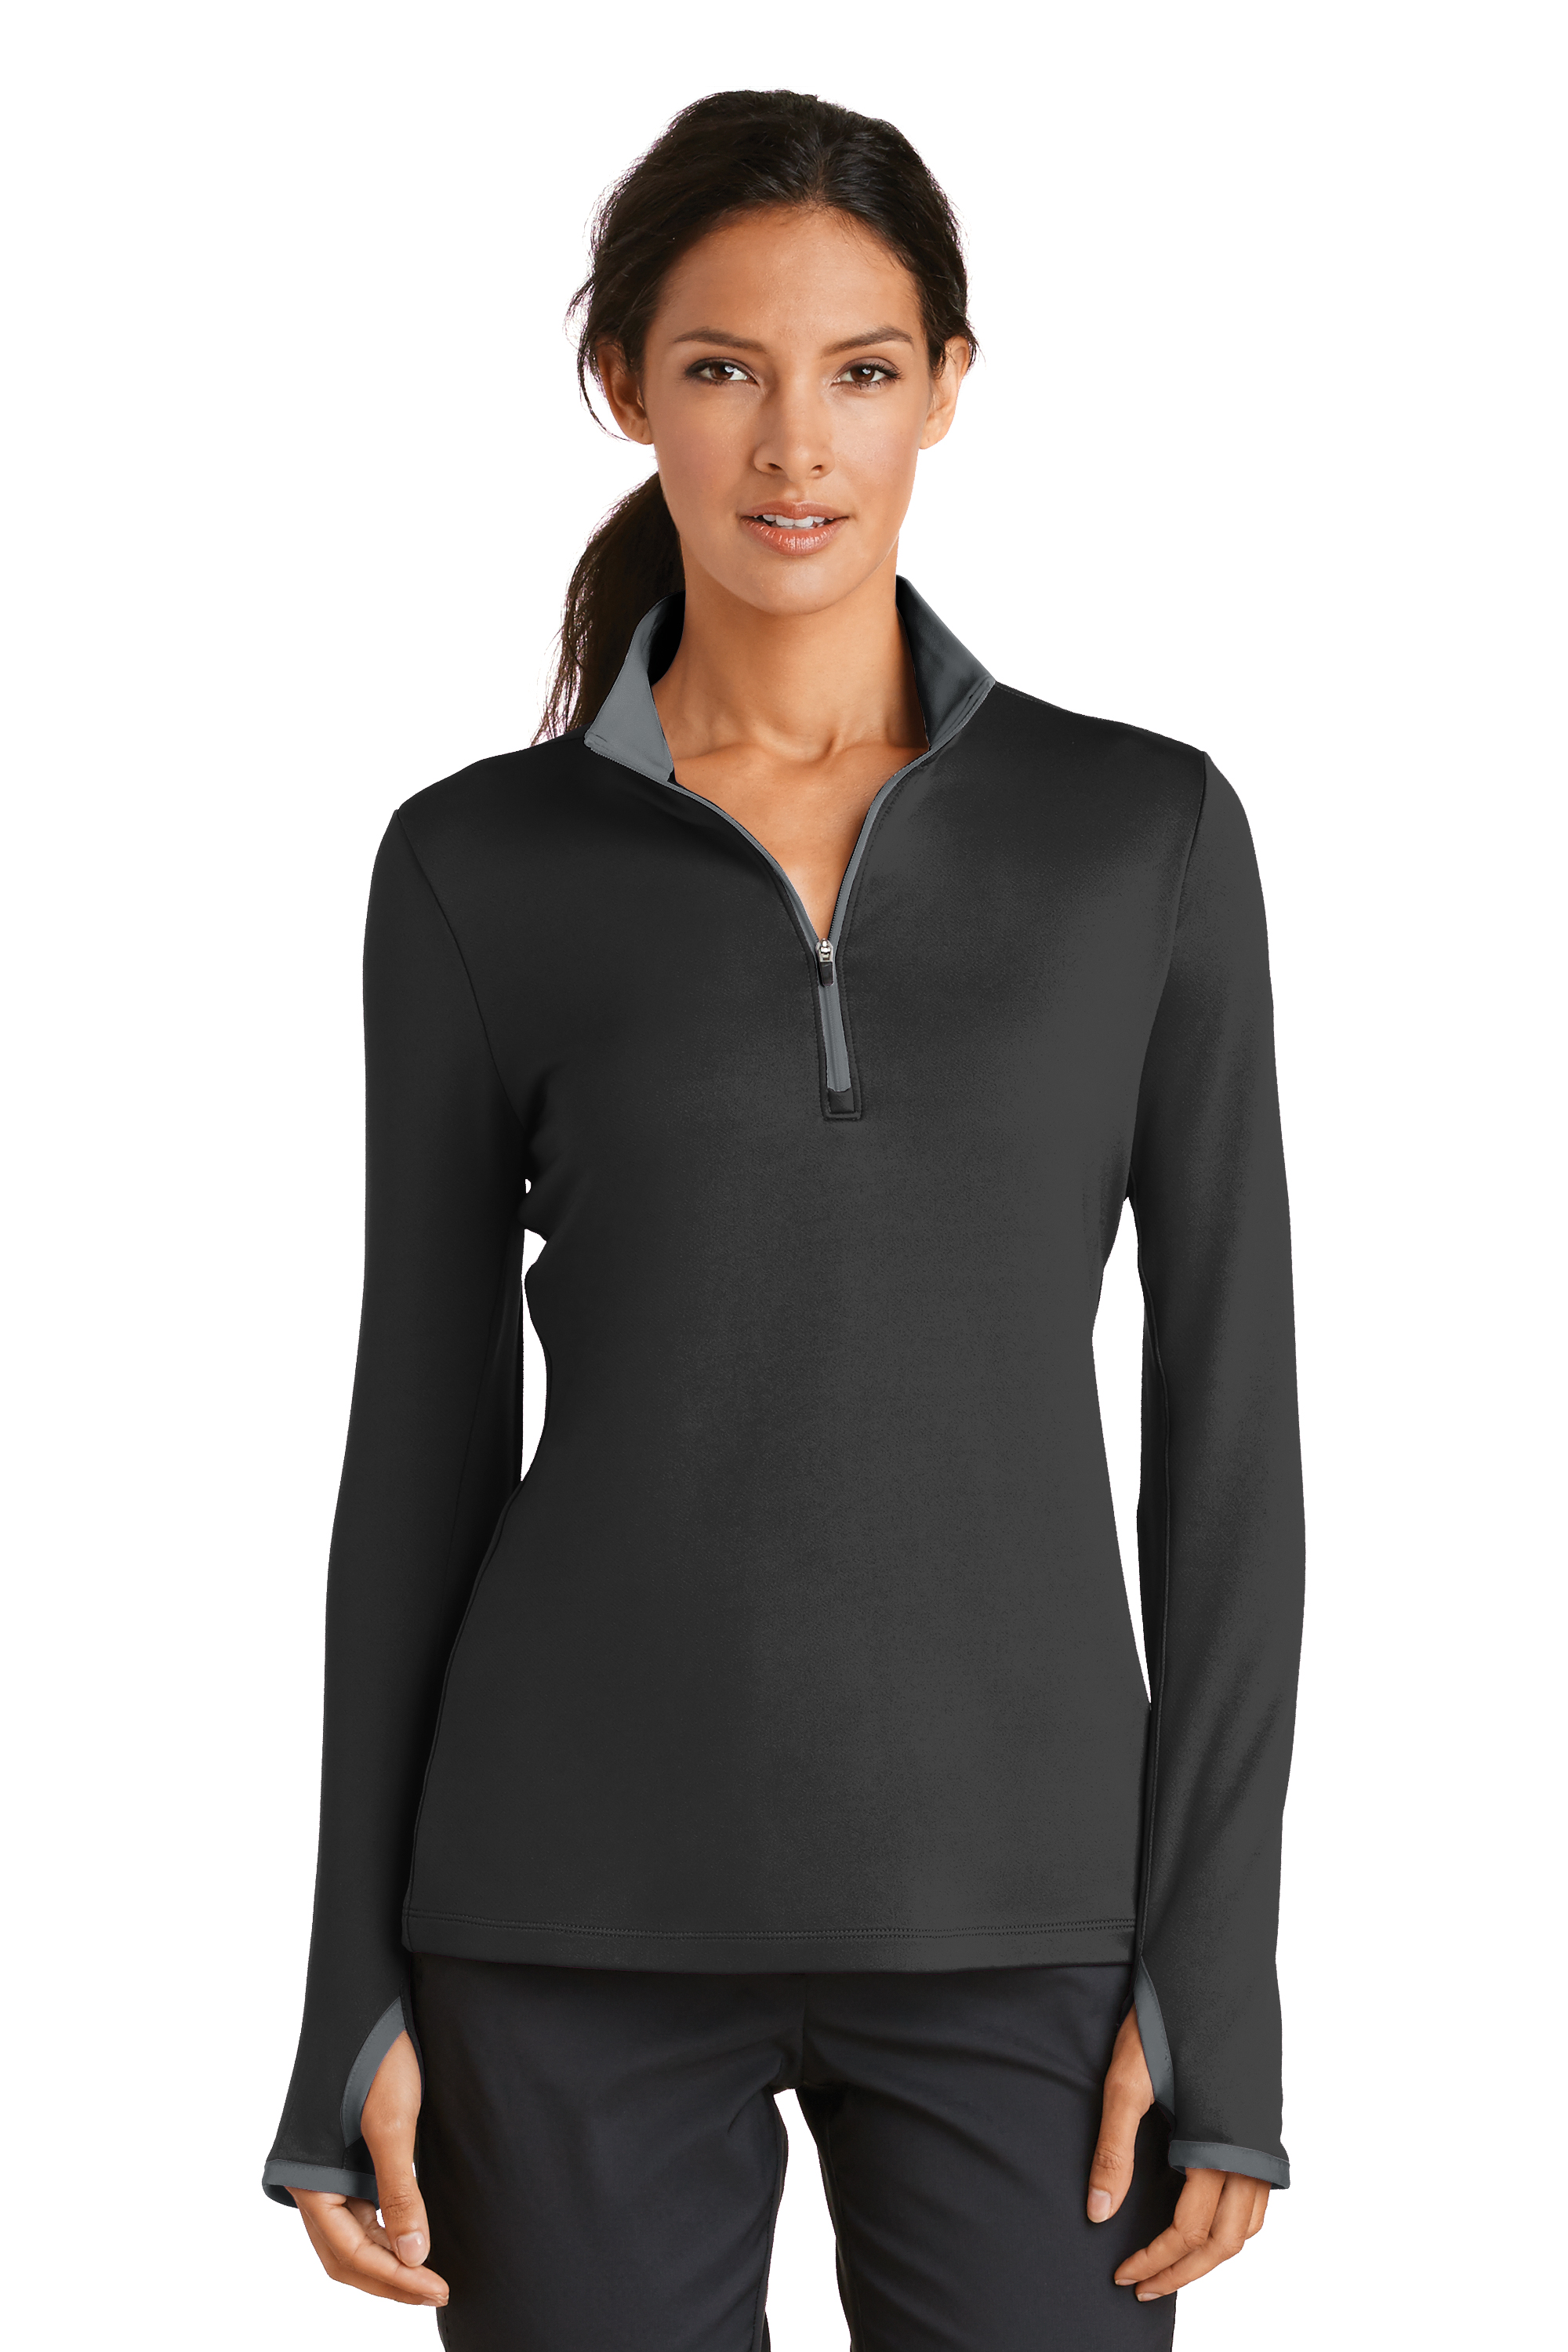 Nike Golf Women's Dri-FIT Stretch Half-Zip Pullover. 779796.